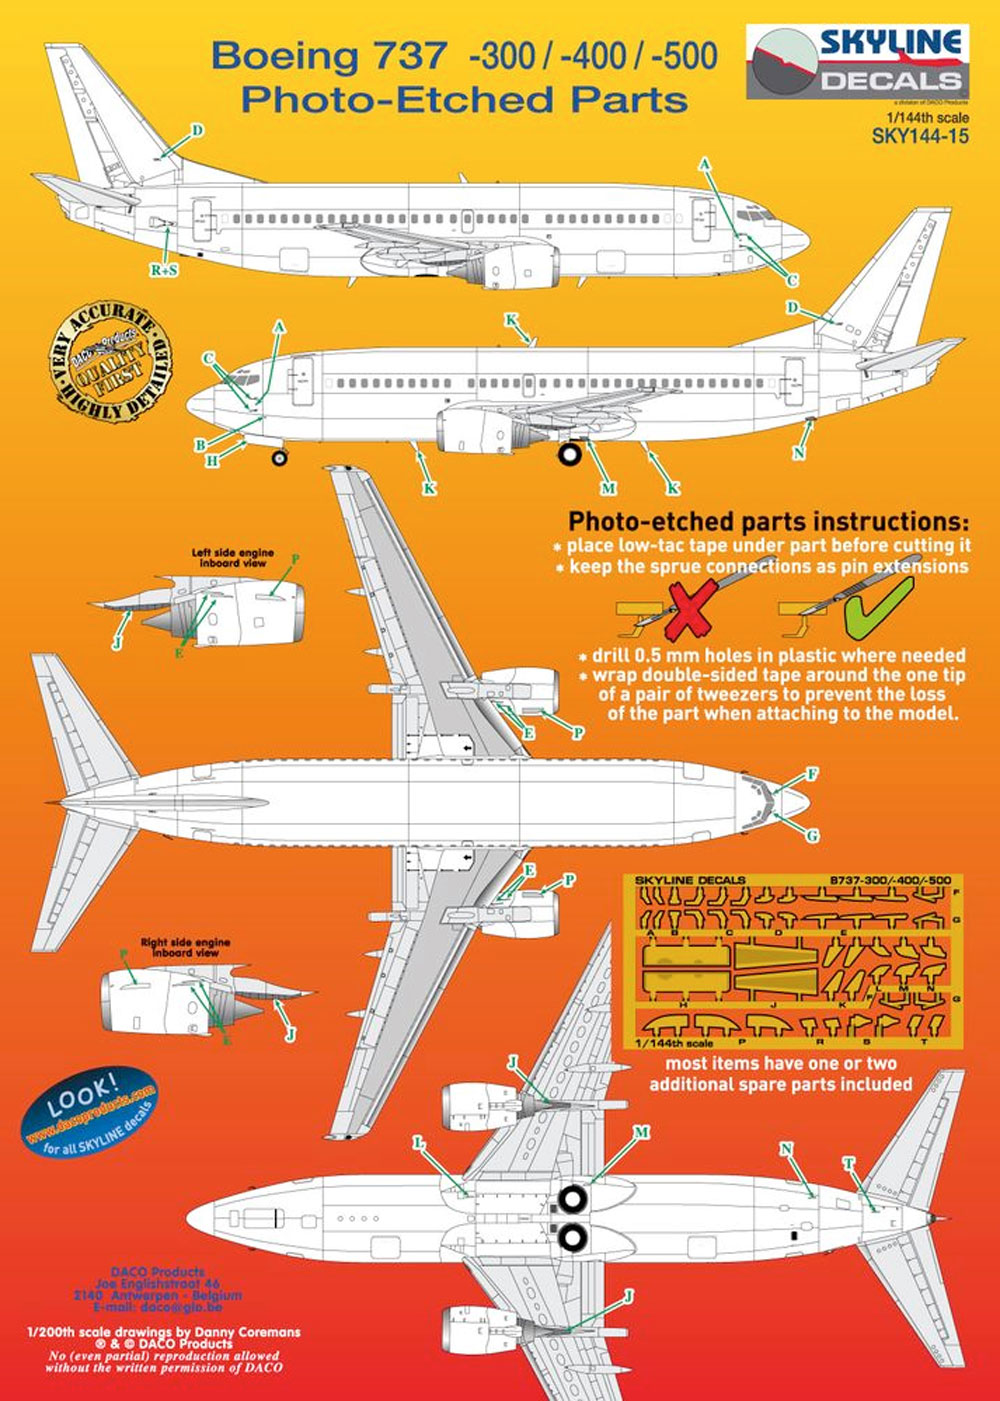 ボーイング 737-300/-400/-500 エッチングパーツ エッチング (DACO SKYLINE DECALS No.SKY144-15) 商品画像_1